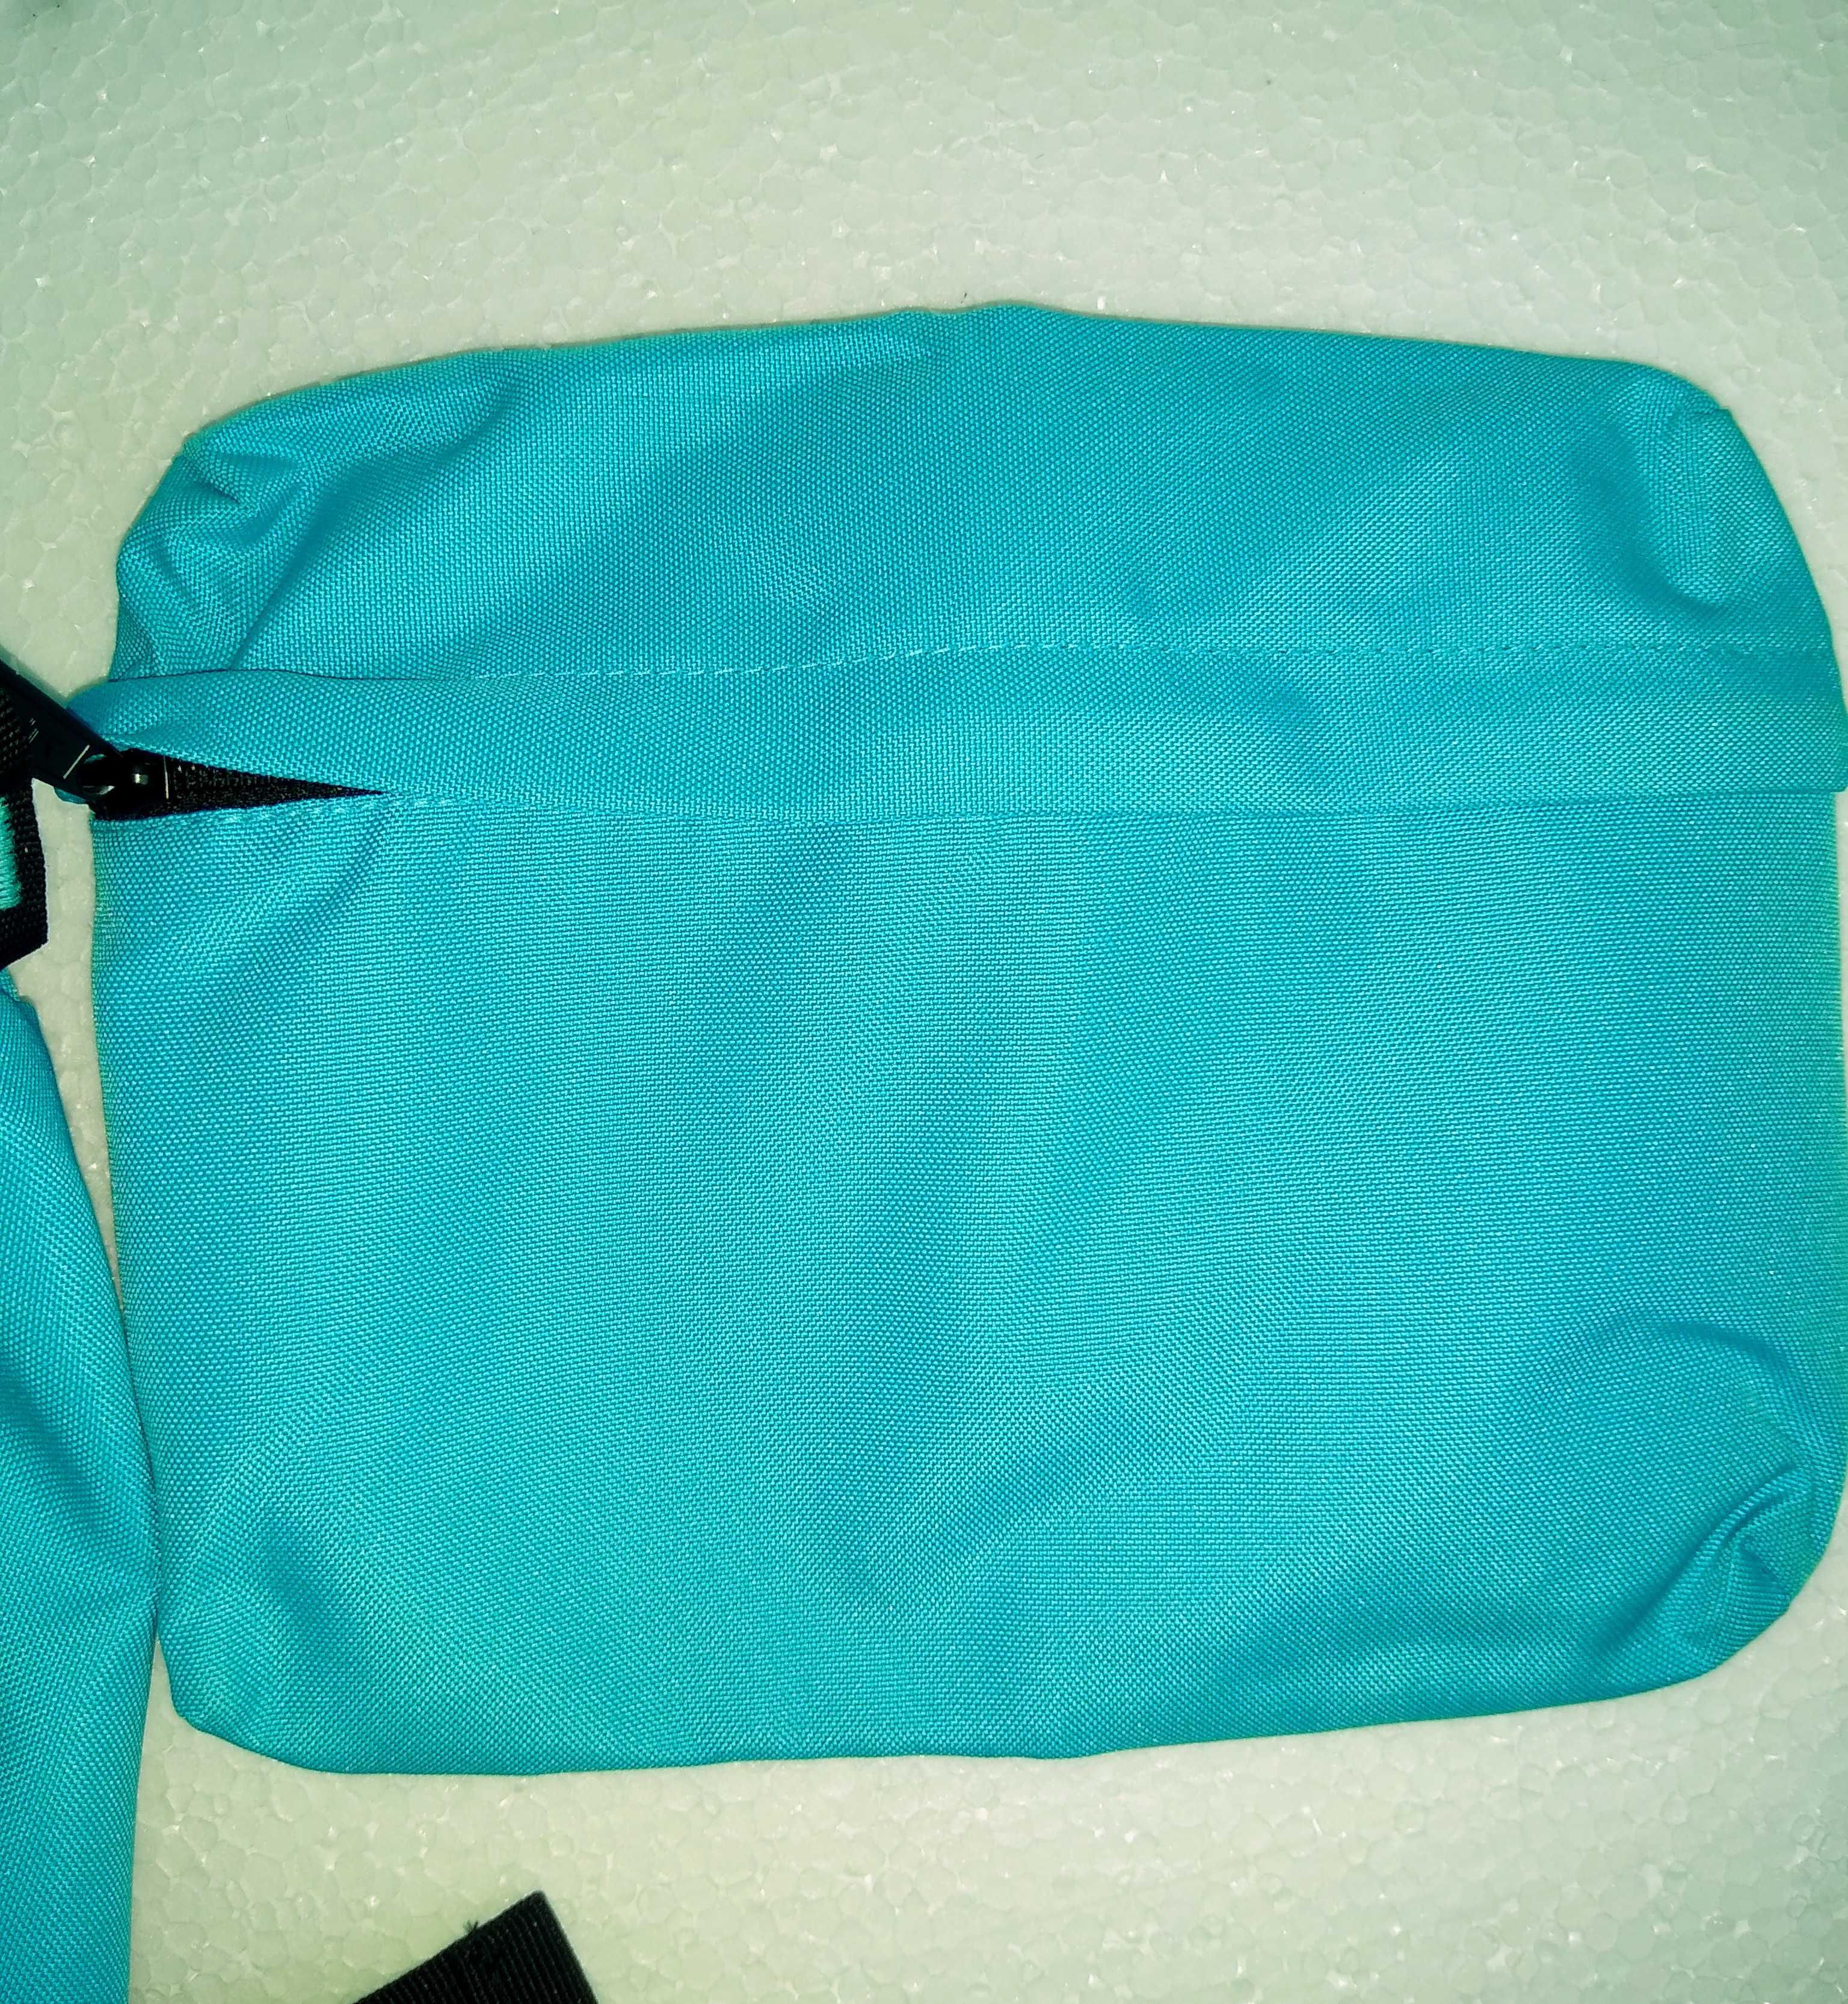 Nowy, francuski plecak Bodypack, z wymienną kieszenią